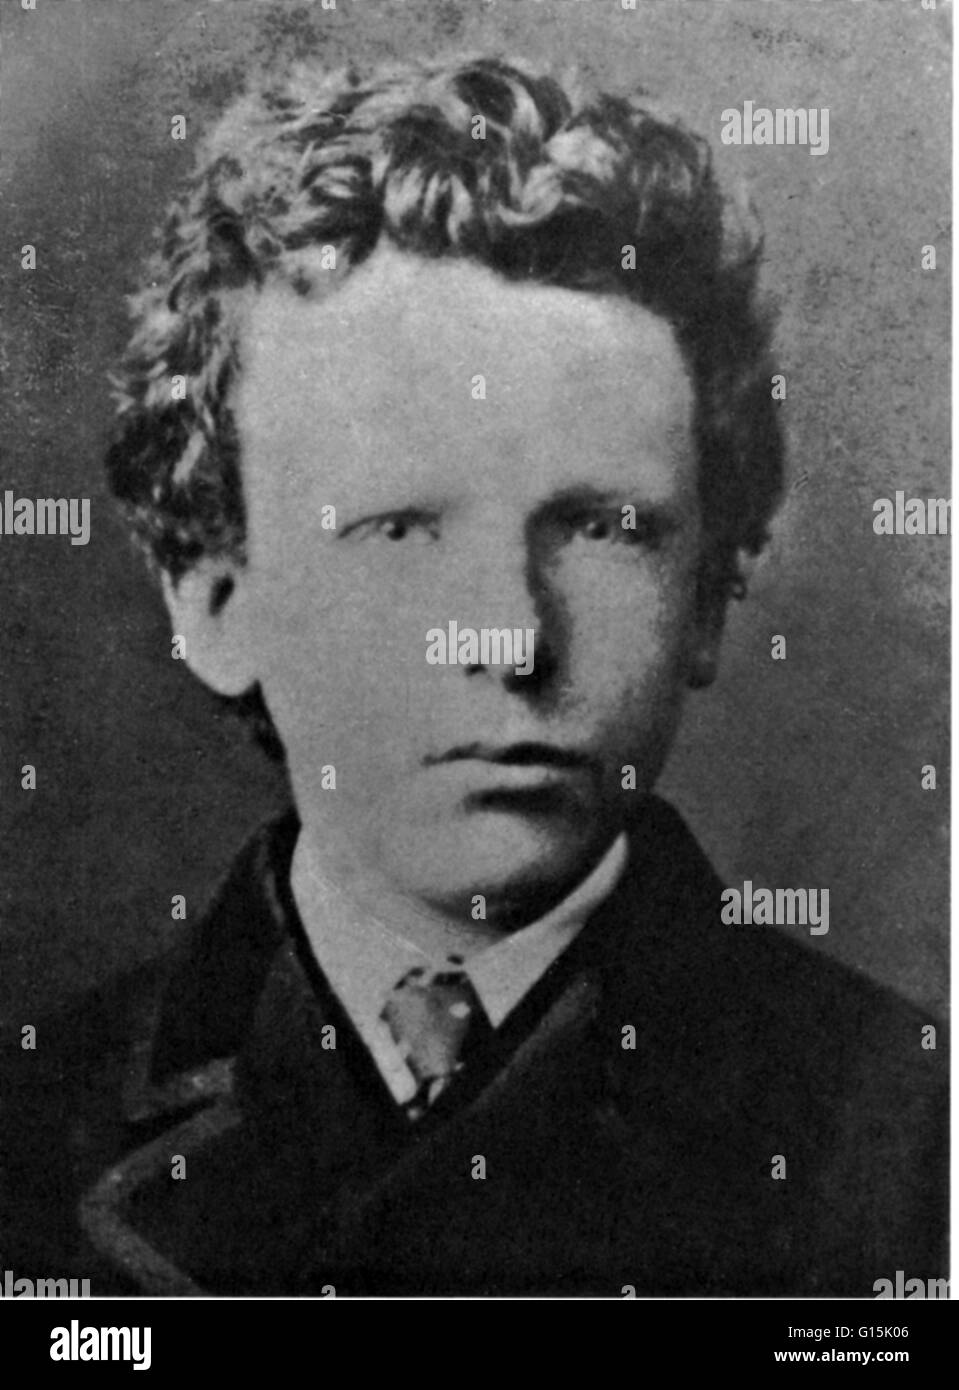 Fotografia di Van Gogh preso quando aveva tredici anni. Vincent Willem van Gogh (Marzo 30, 1853 - 29 luglio 1890) era un olandese post-pittore impressionista il cui lavoro, notevole per la sua bellezza ruvida, onestà emotiva e bold color, aveva una profonda influenc Foto Stock